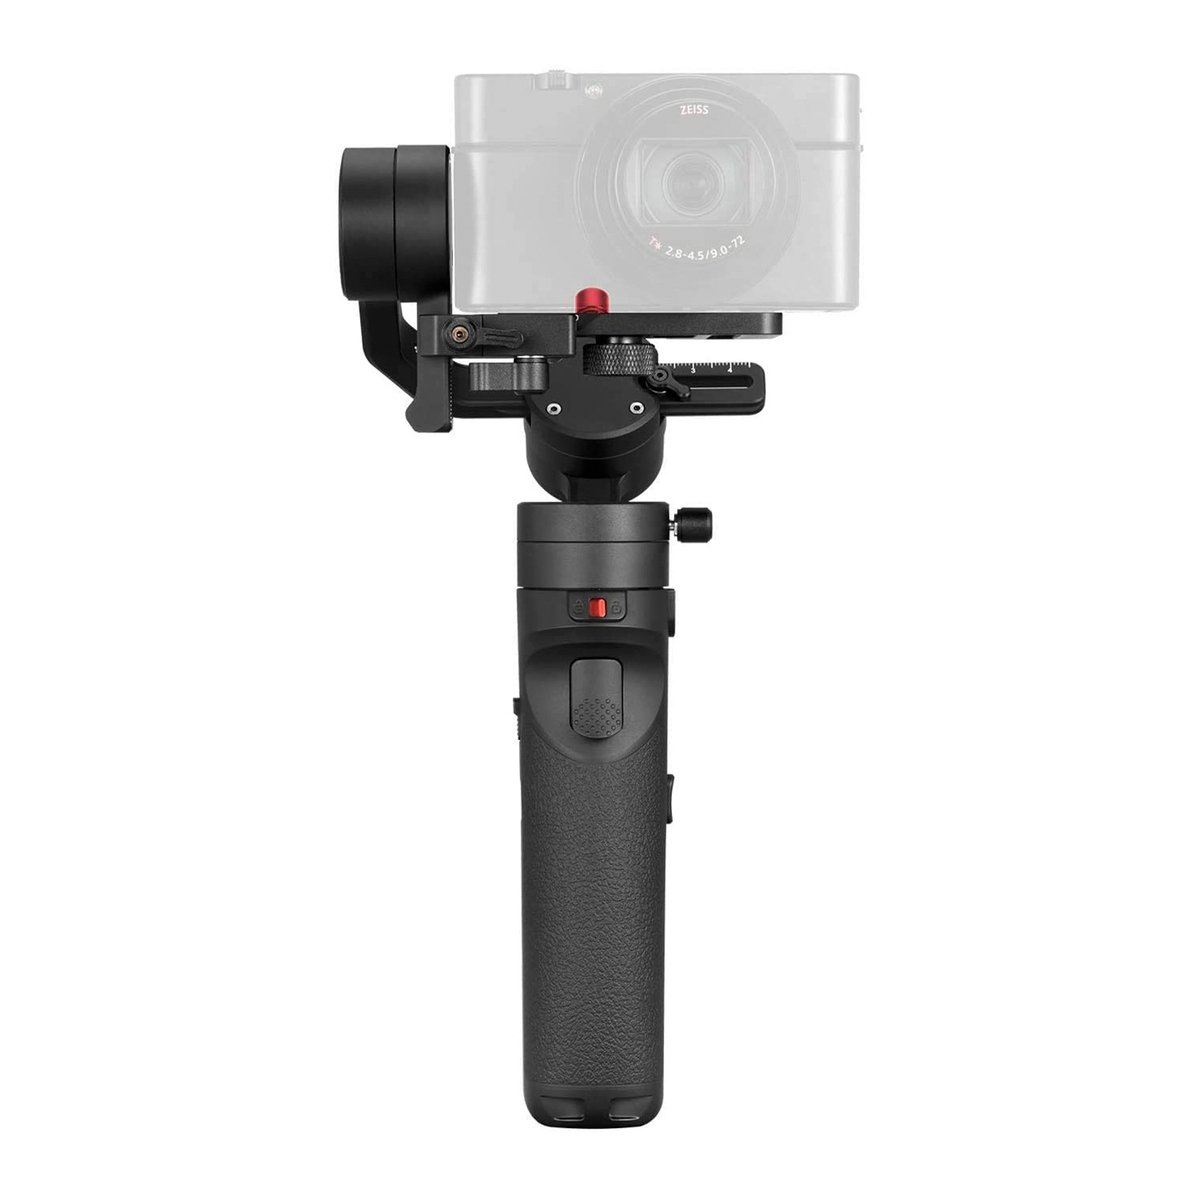 Zhiyun Crane-M2 Handheld 3-Axis Gimbal Stabilizer for Mirrorless Camera, Gopro, Smartphones